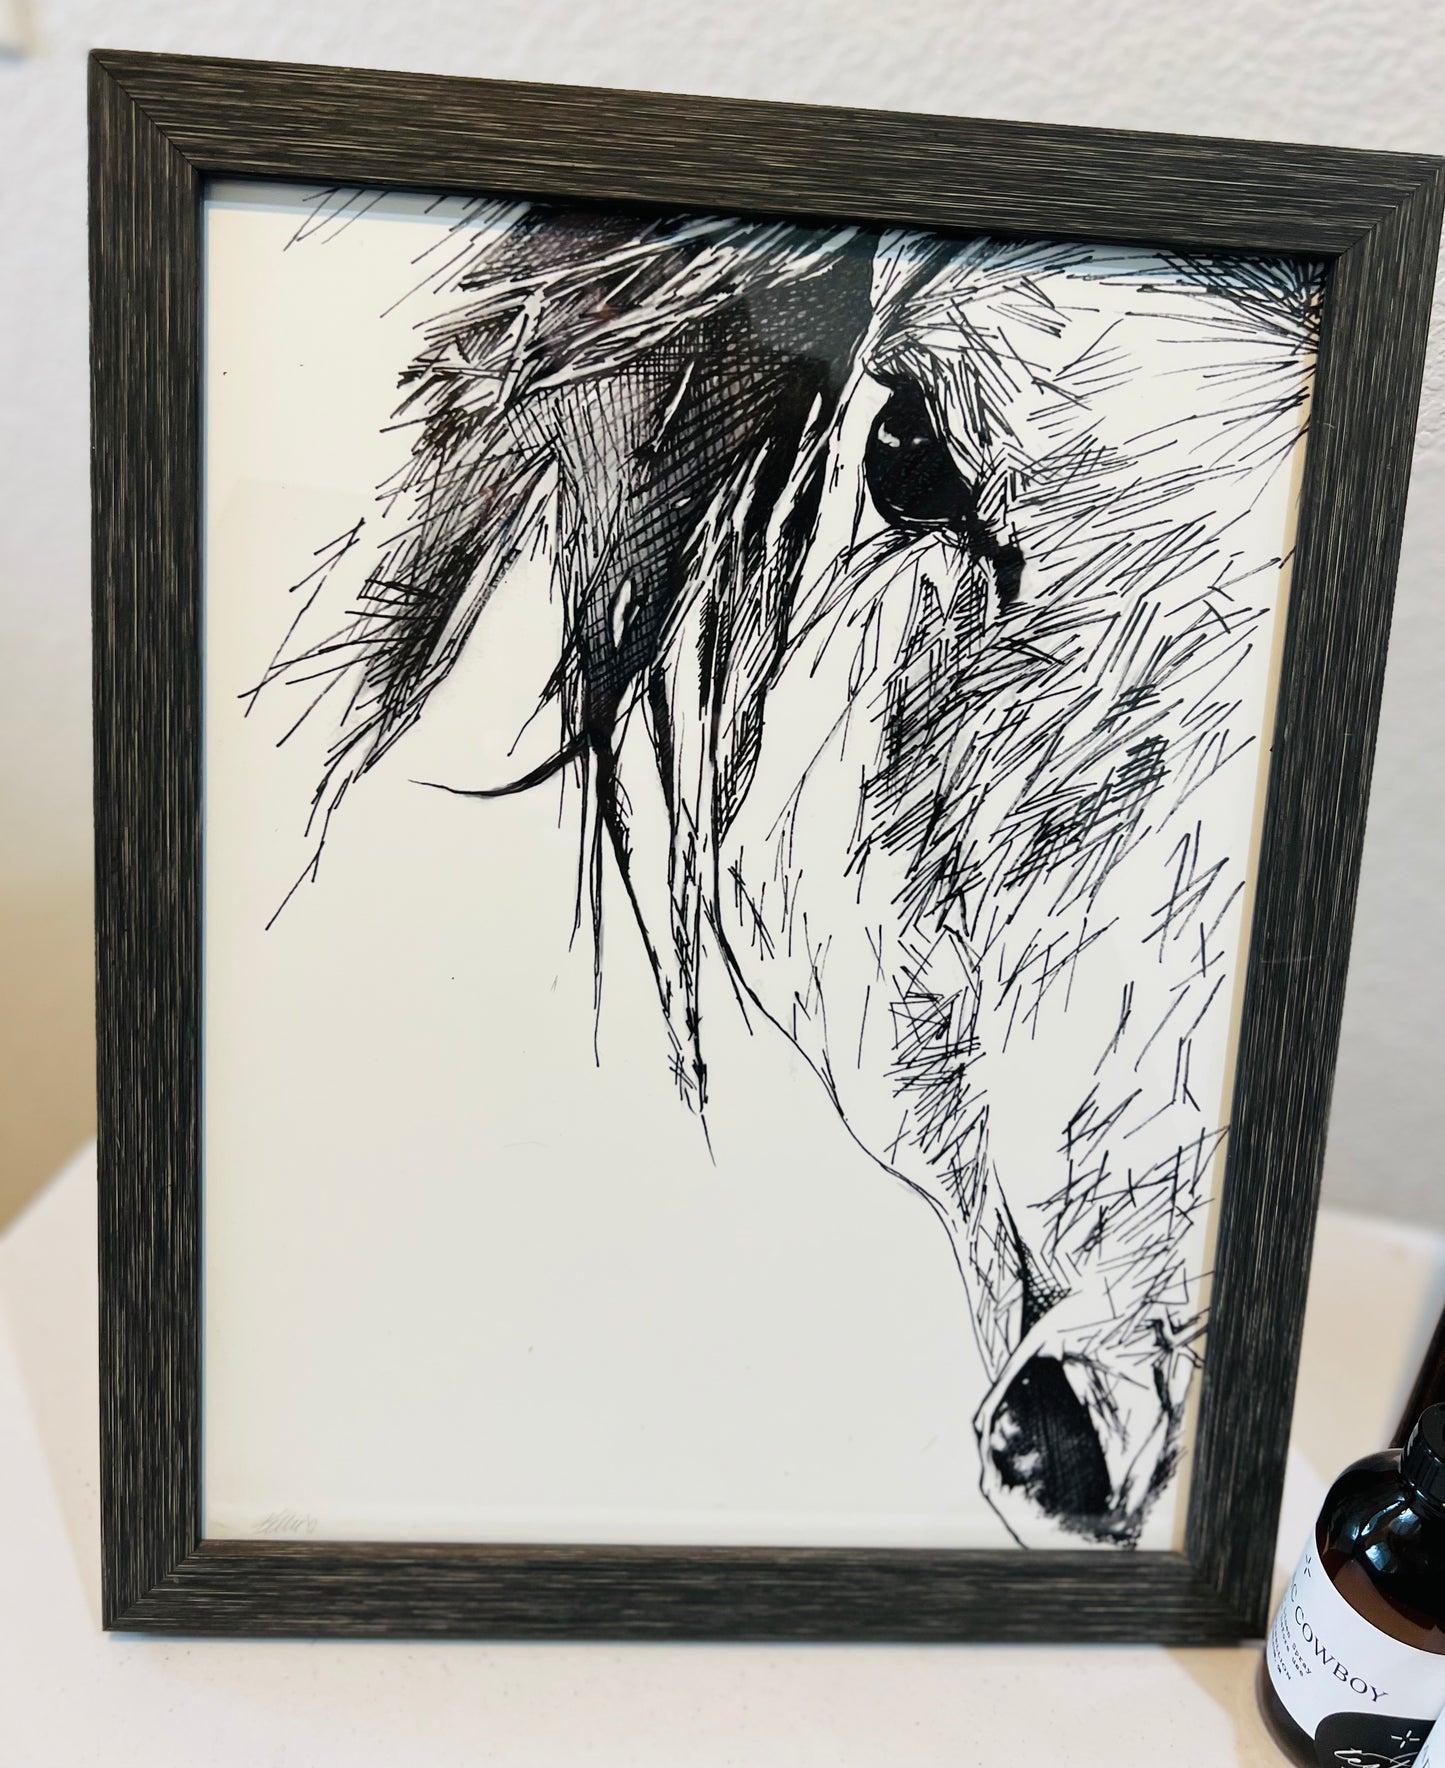 Framed Black & White Horse Drawing